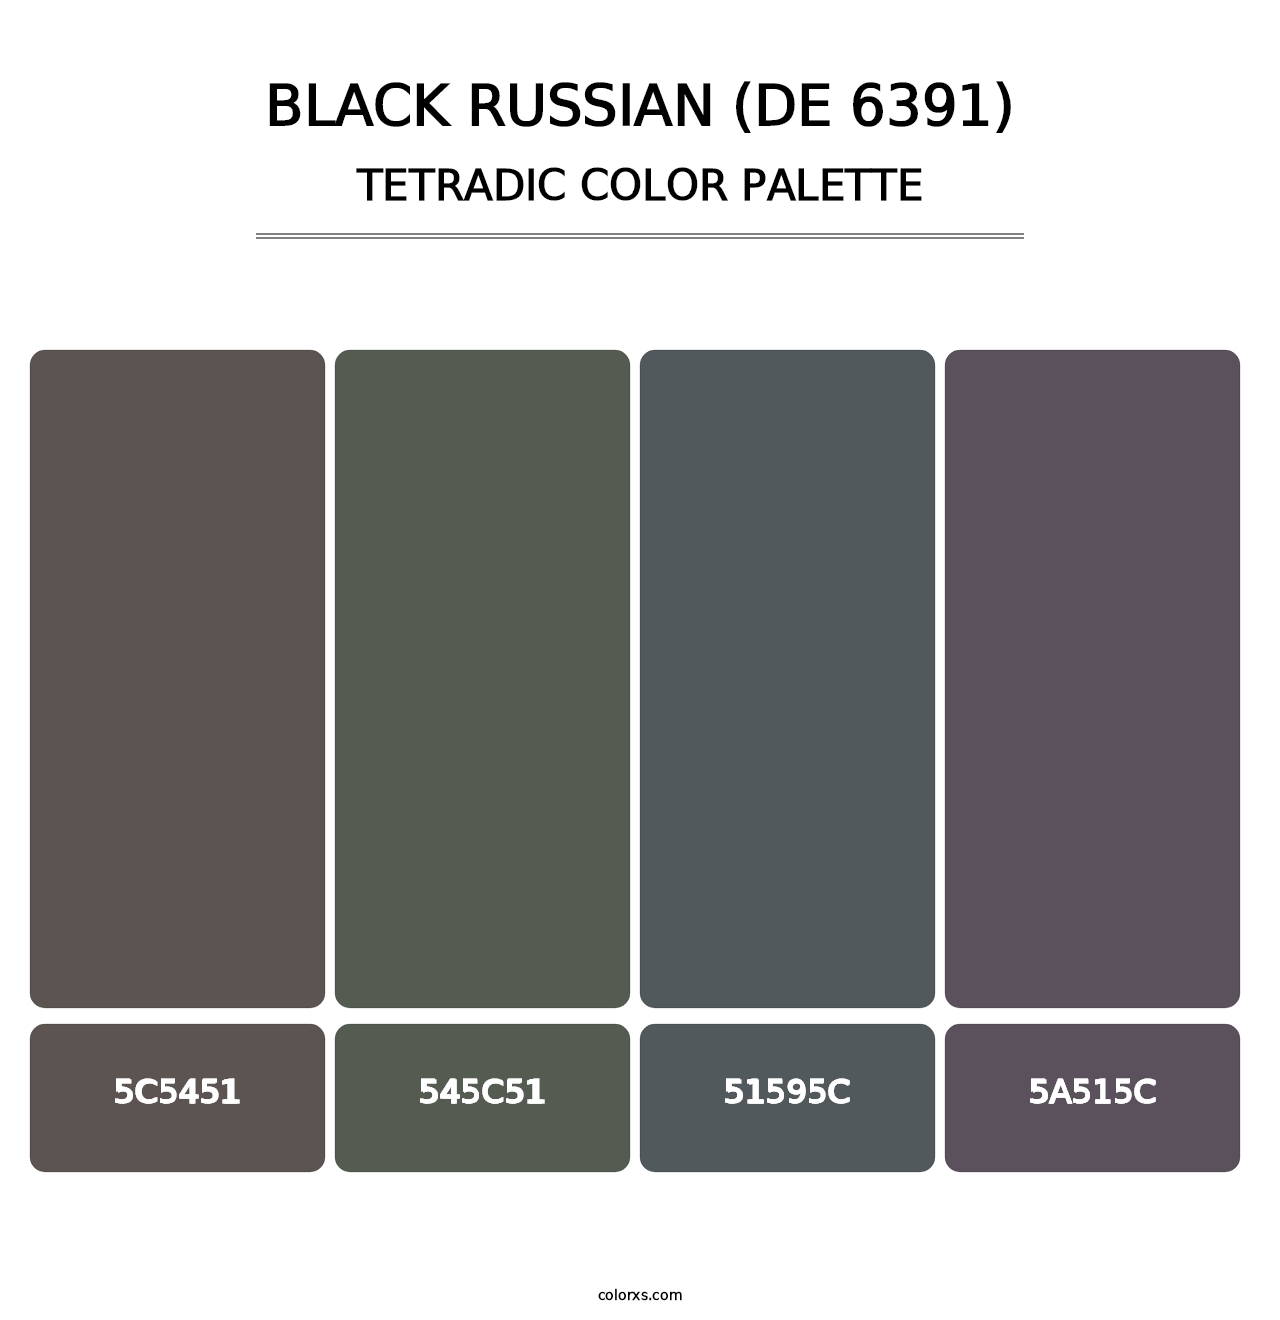 Black Russian (DE 6391) - Tetradic Color Palette